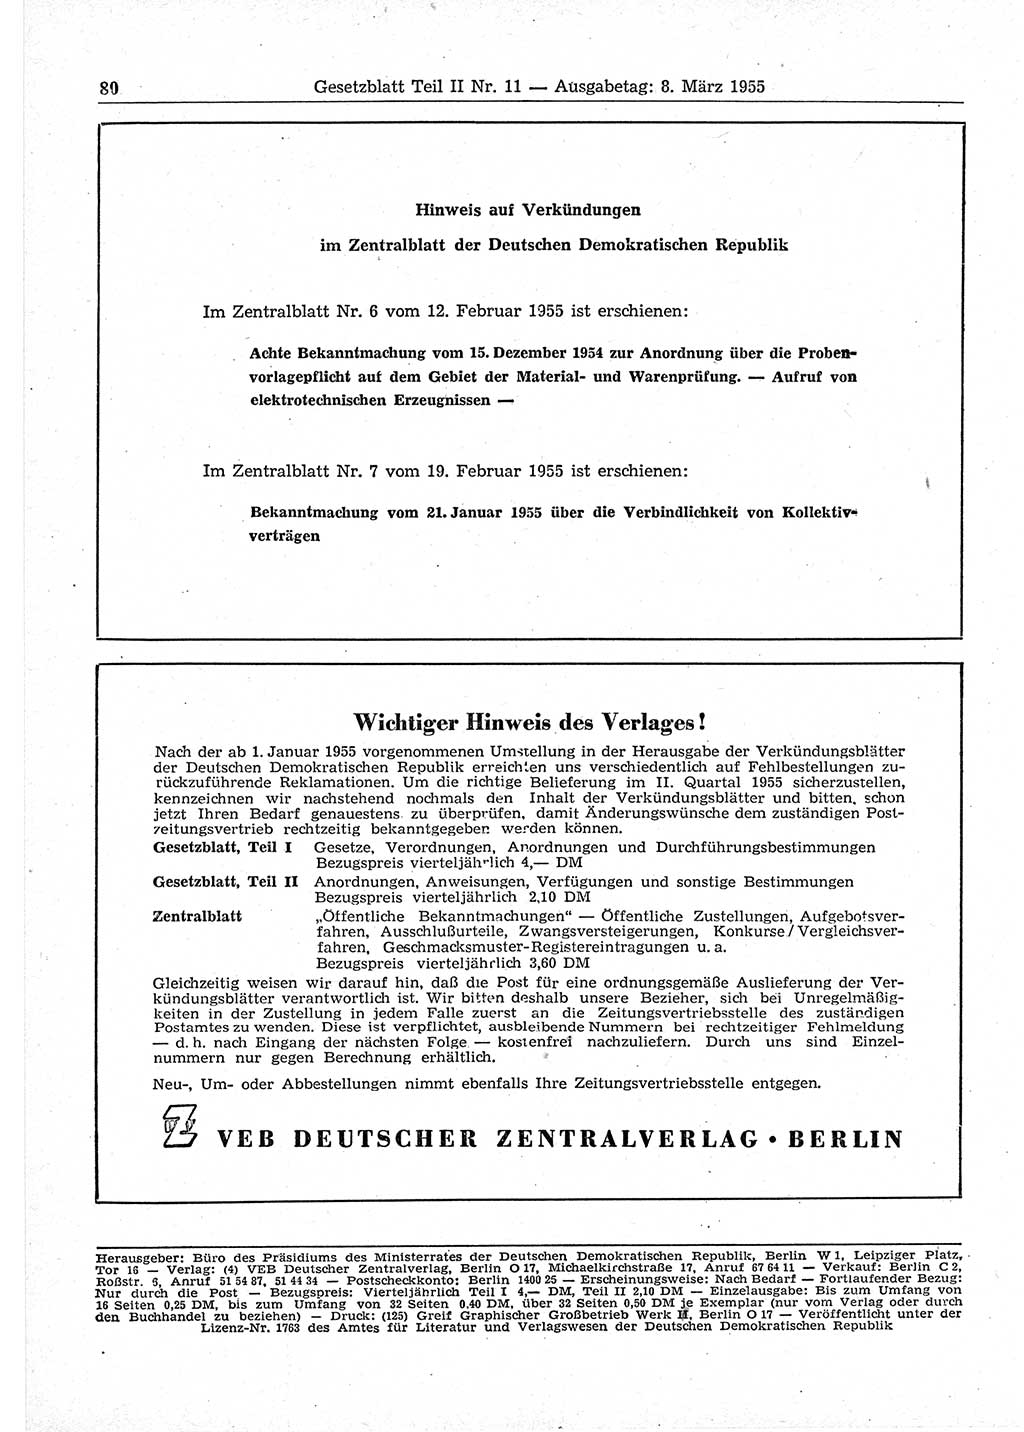 Gesetzblatt (GBl.) der Deutschen Demokratischen Republik (DDR) Teil ⅠⅠ 1955, Seite 80 (GBl. DDR ⅠⅠ 1955, S. 80)